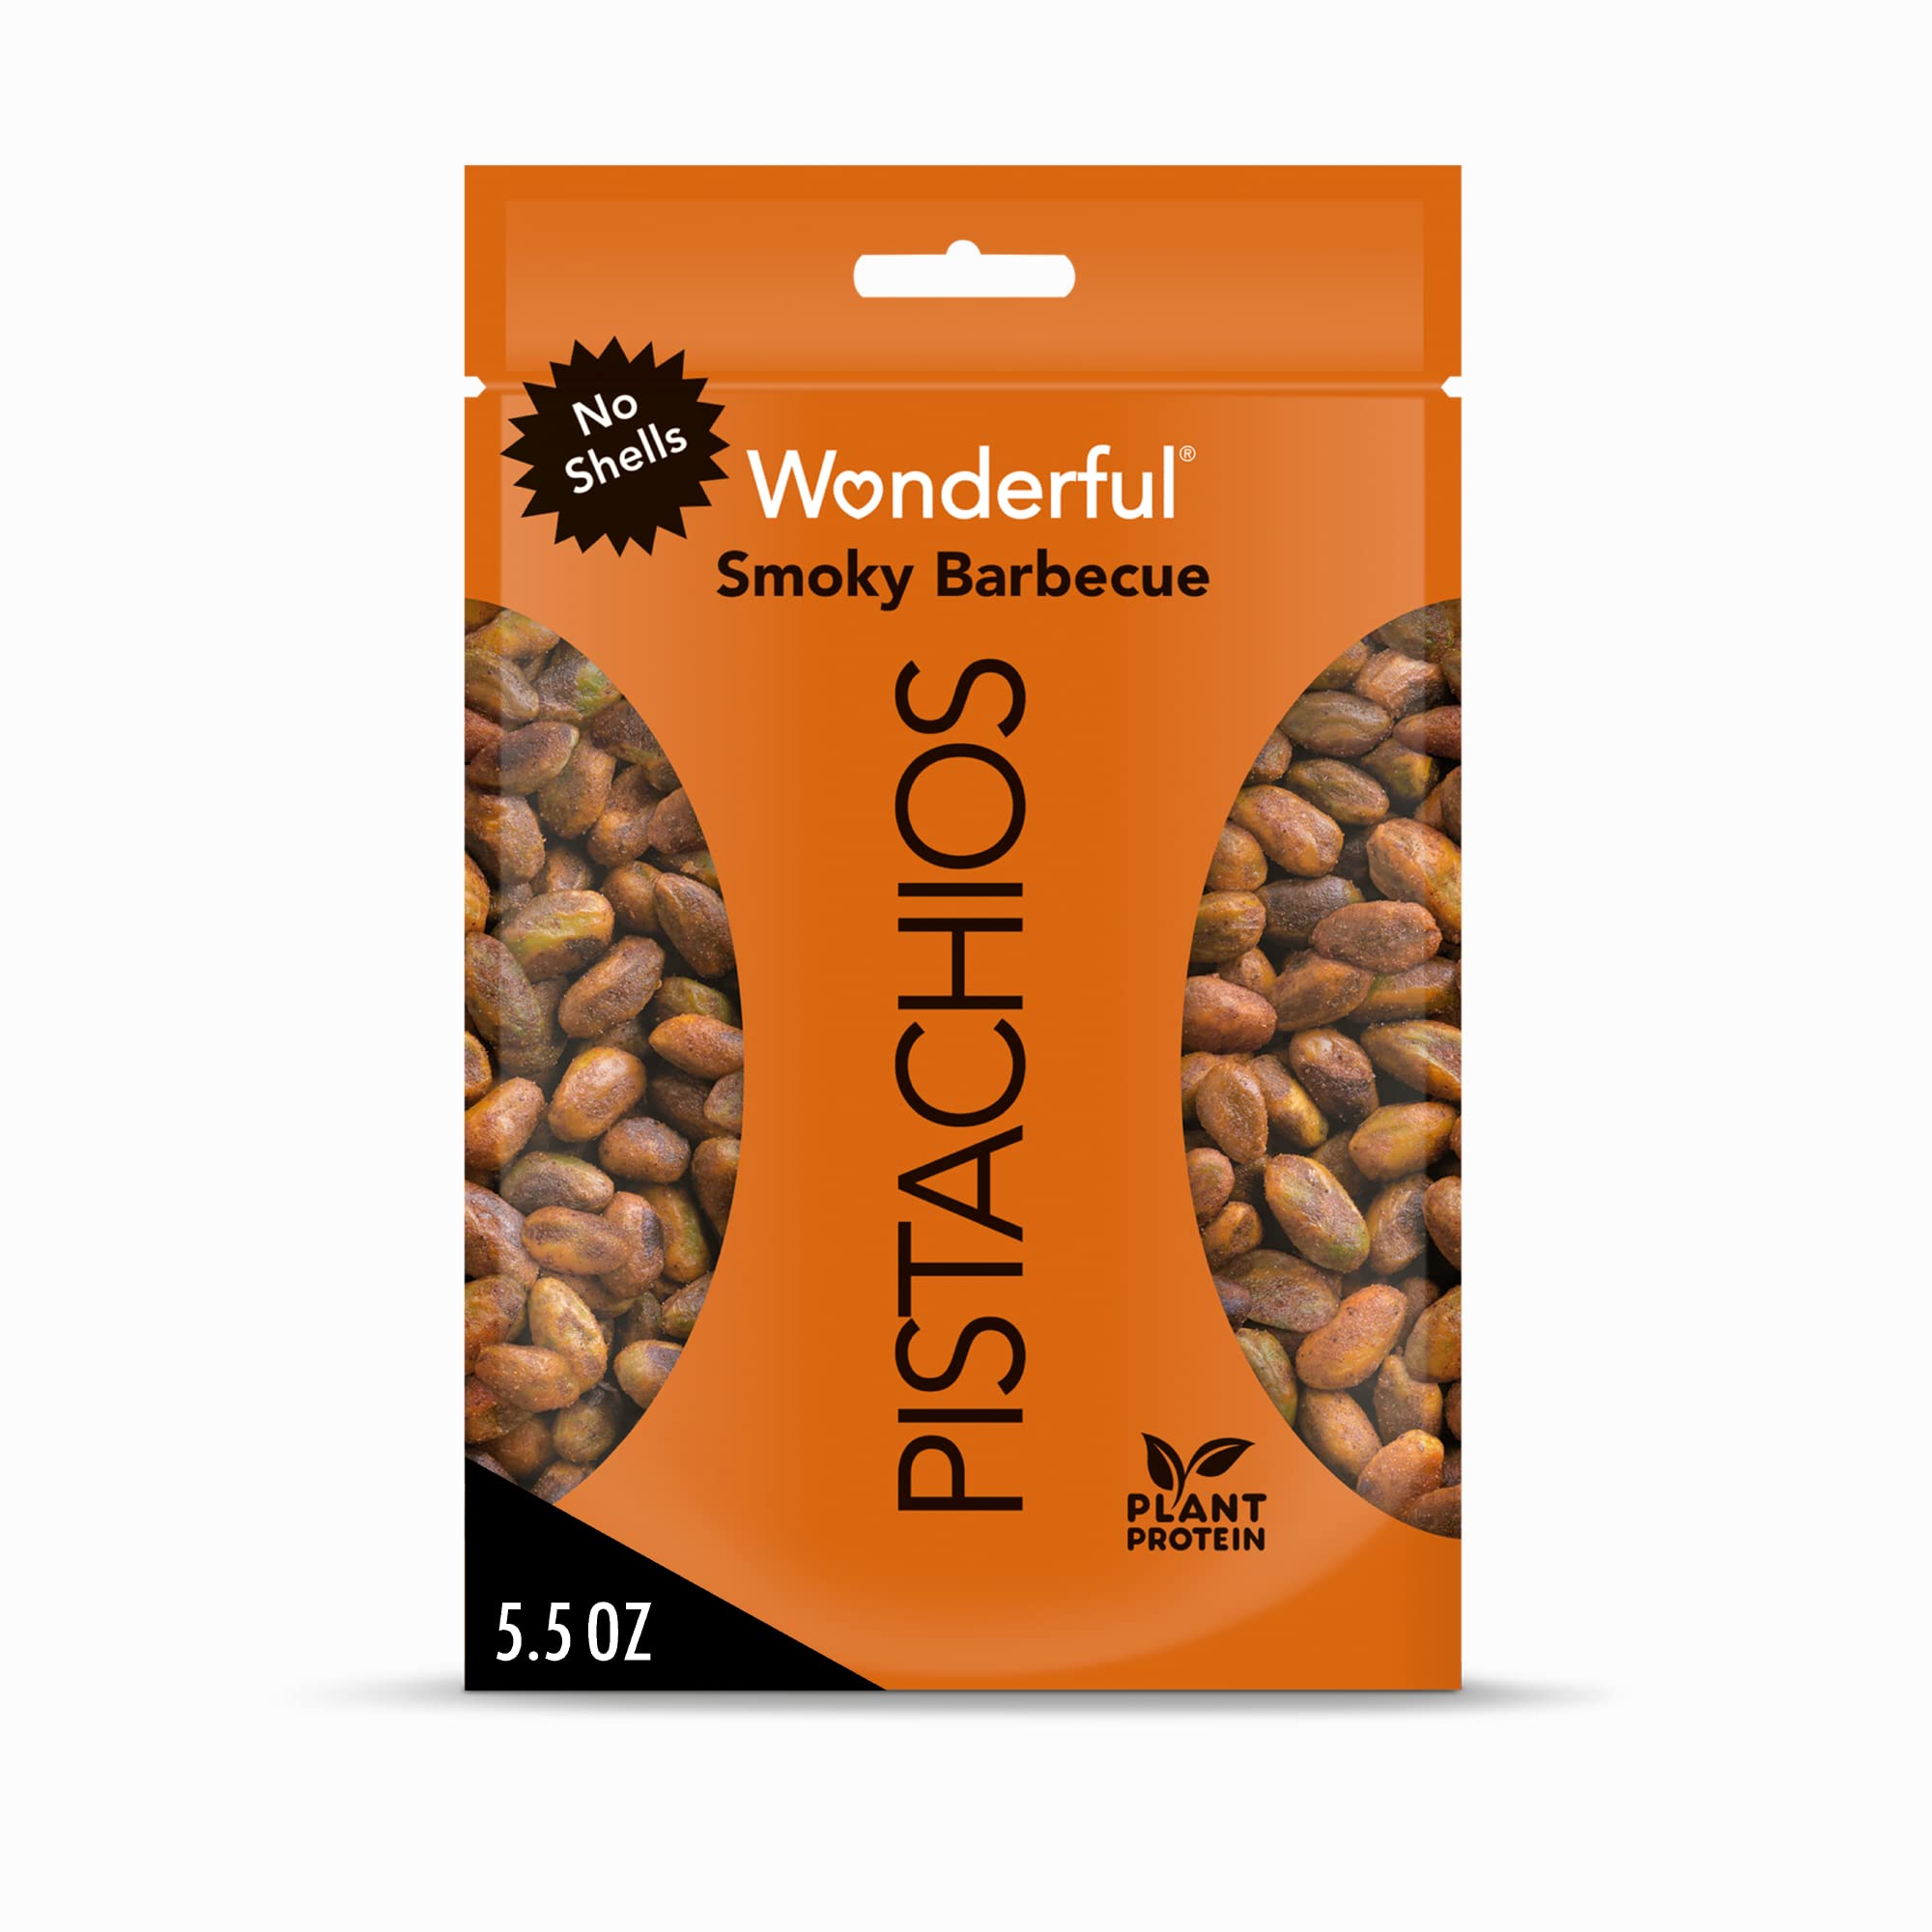 5.5-Oz Wonderful Pistachios (Smoky BBQ, No Shells) $3.70 w/ S&S + Free Shipping w/ Prime or on $25+